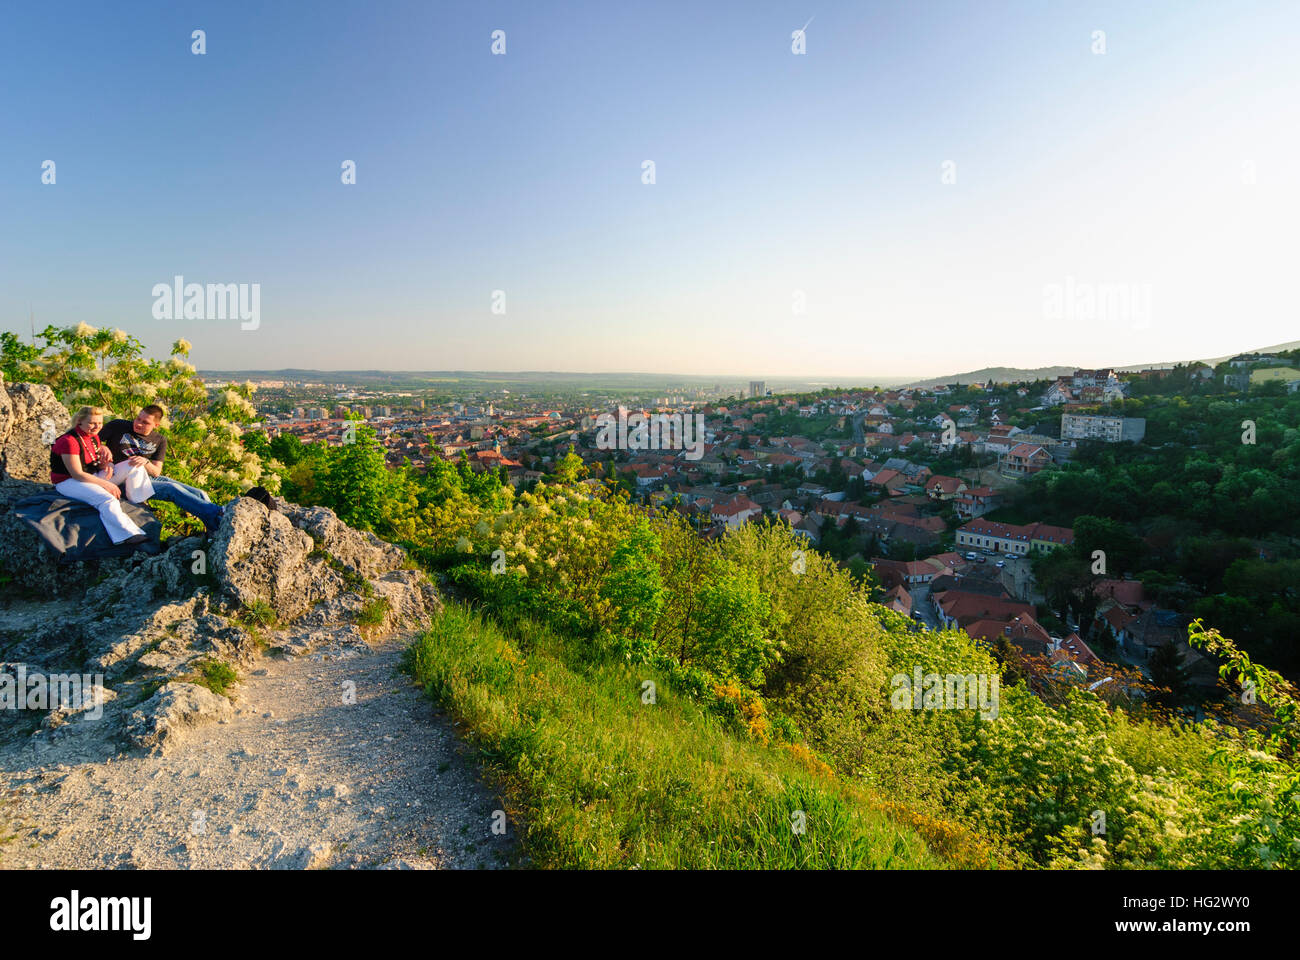 Pecs (Fünfkirchen) : Havi hill au début de la chaîne de montagnes Mecsek avec une vue sur la ville, , Baranya, Hongrie Banque D'Images